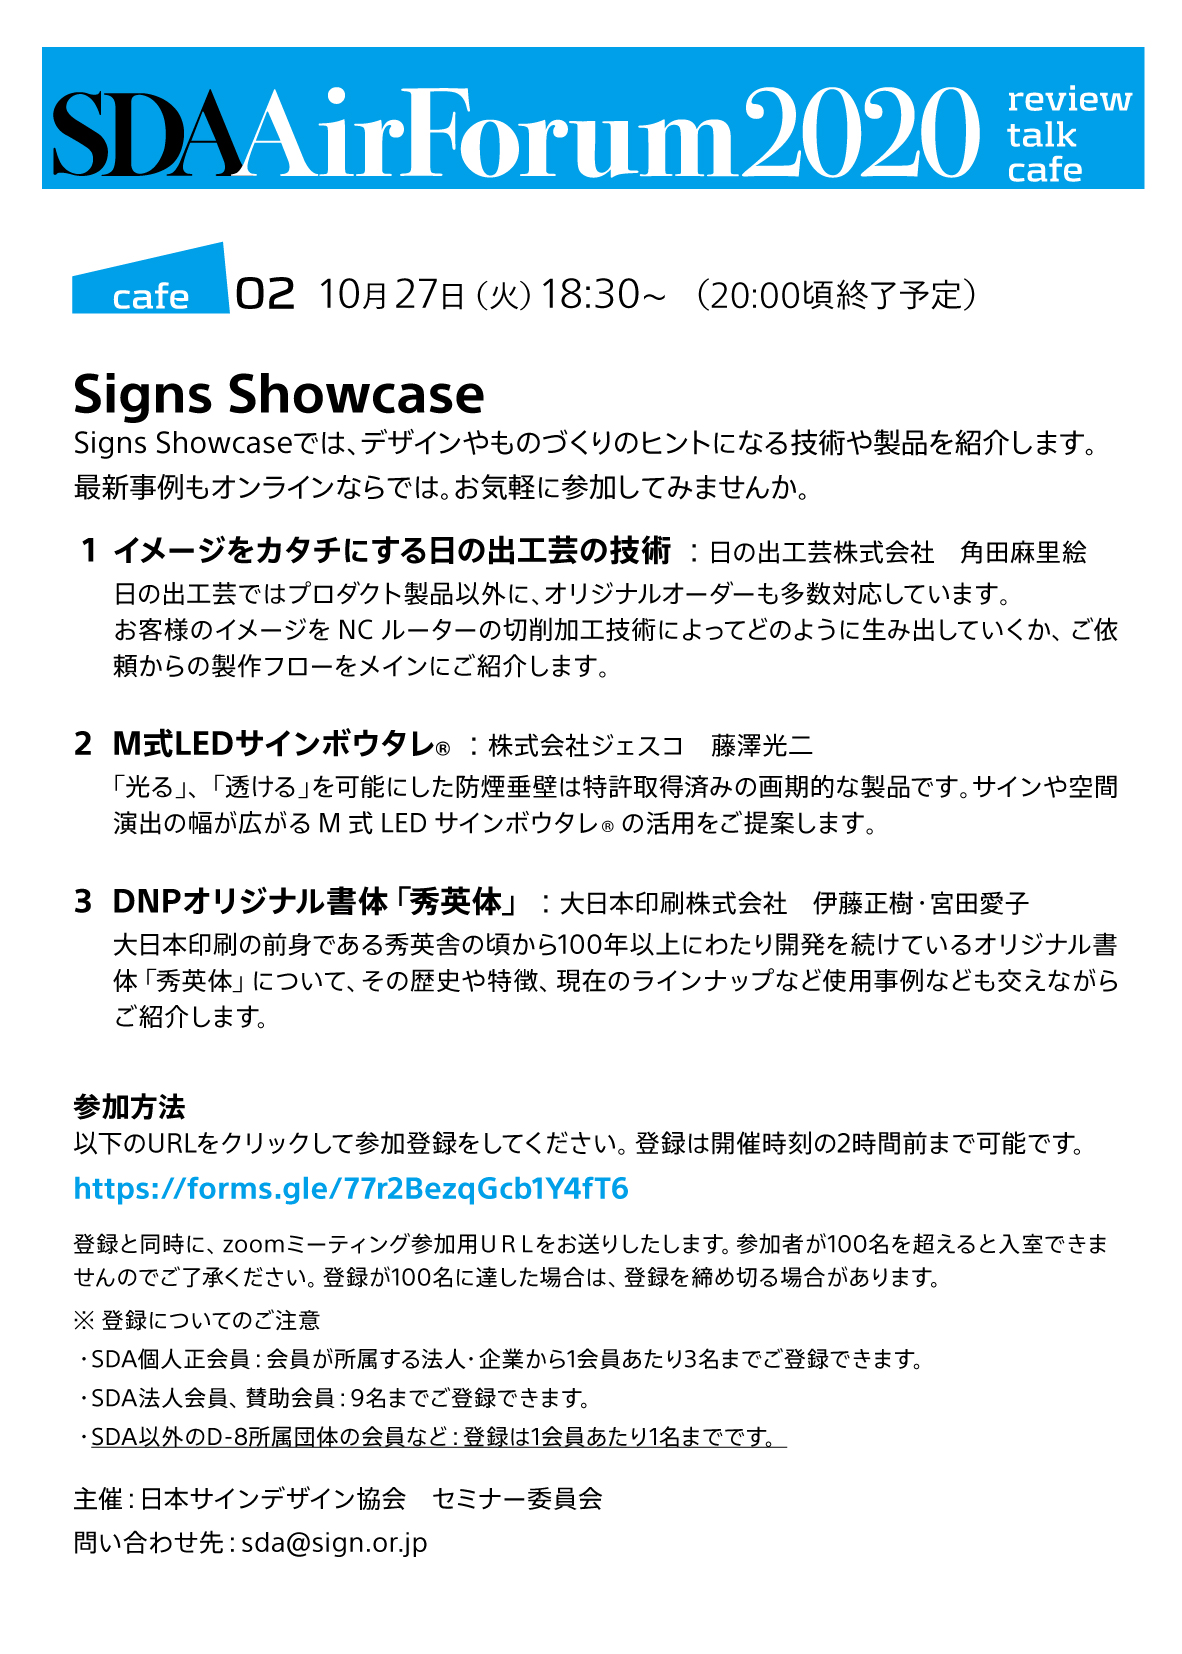 AirForum : cafe 02 Signs Showcase - 公益社団法人日本サインデザイン